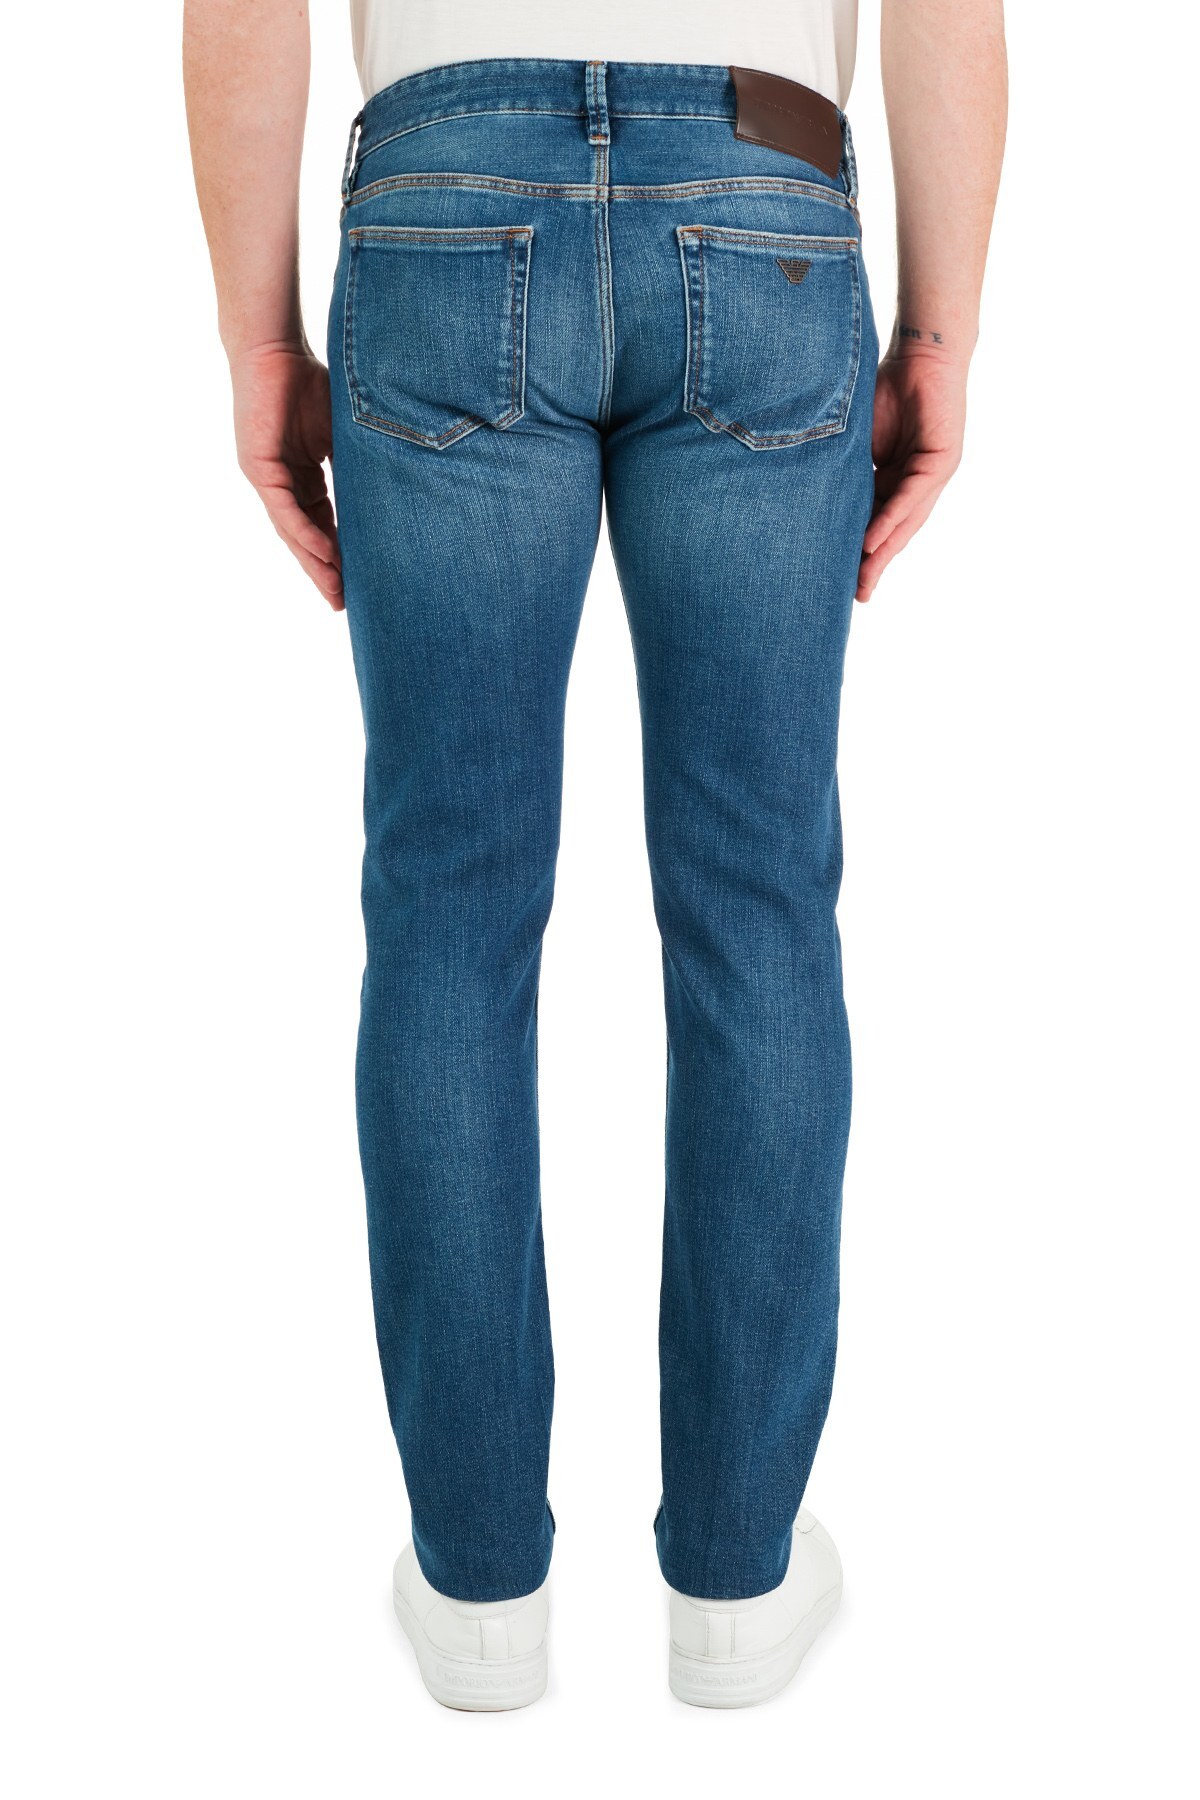 Emporio Armani Slim Fit Pamuklu J75 Jeans Erkek Kot Pantolon 3K1J75 1DX2Z 0942 LACİVERT